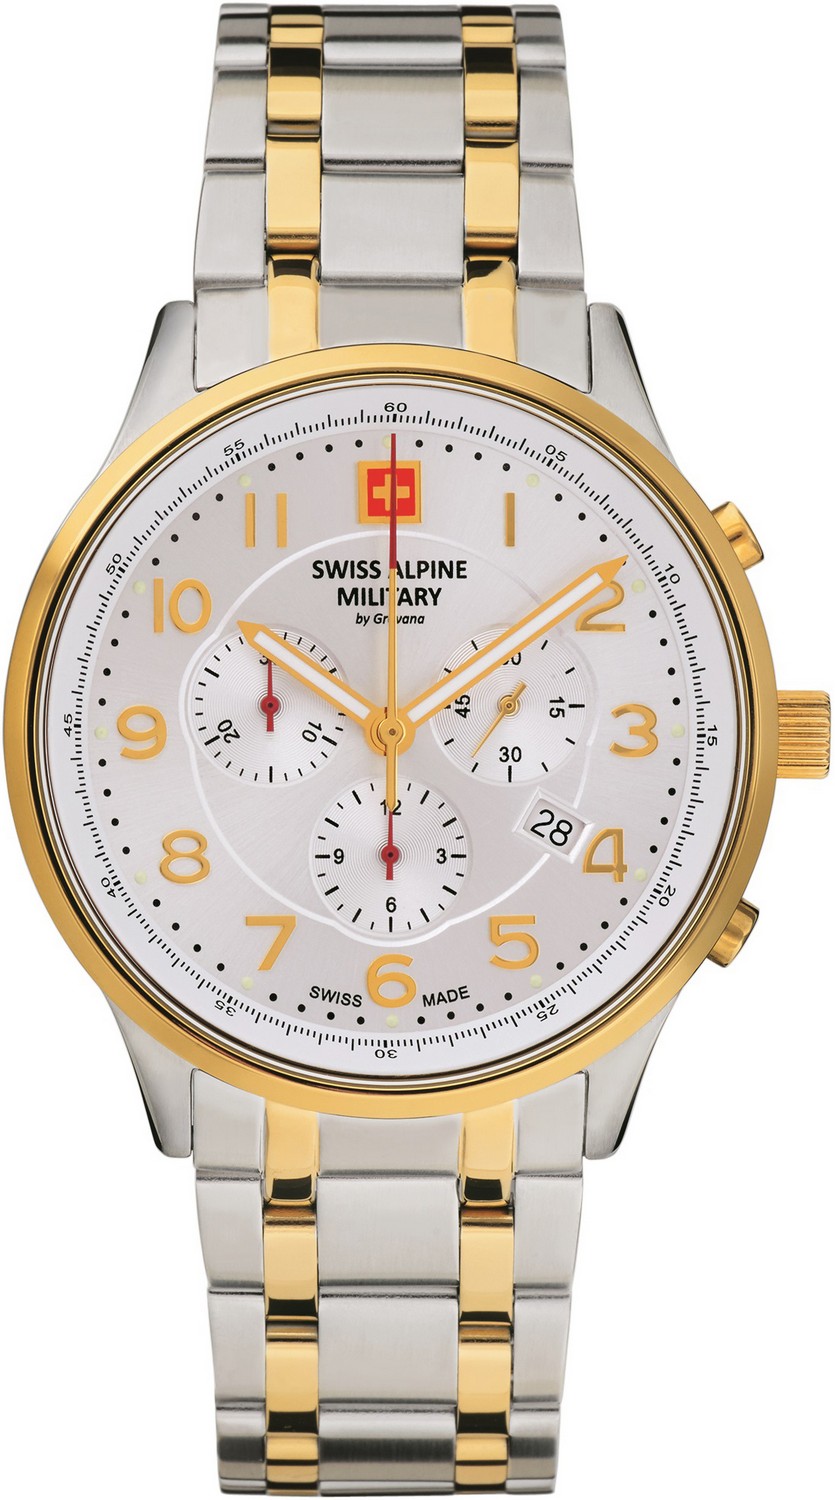 SWISS ALPINE MILITARY  Мужские швейцарские часы, кварцевый механизм, сталь с покрытием, 43 мм